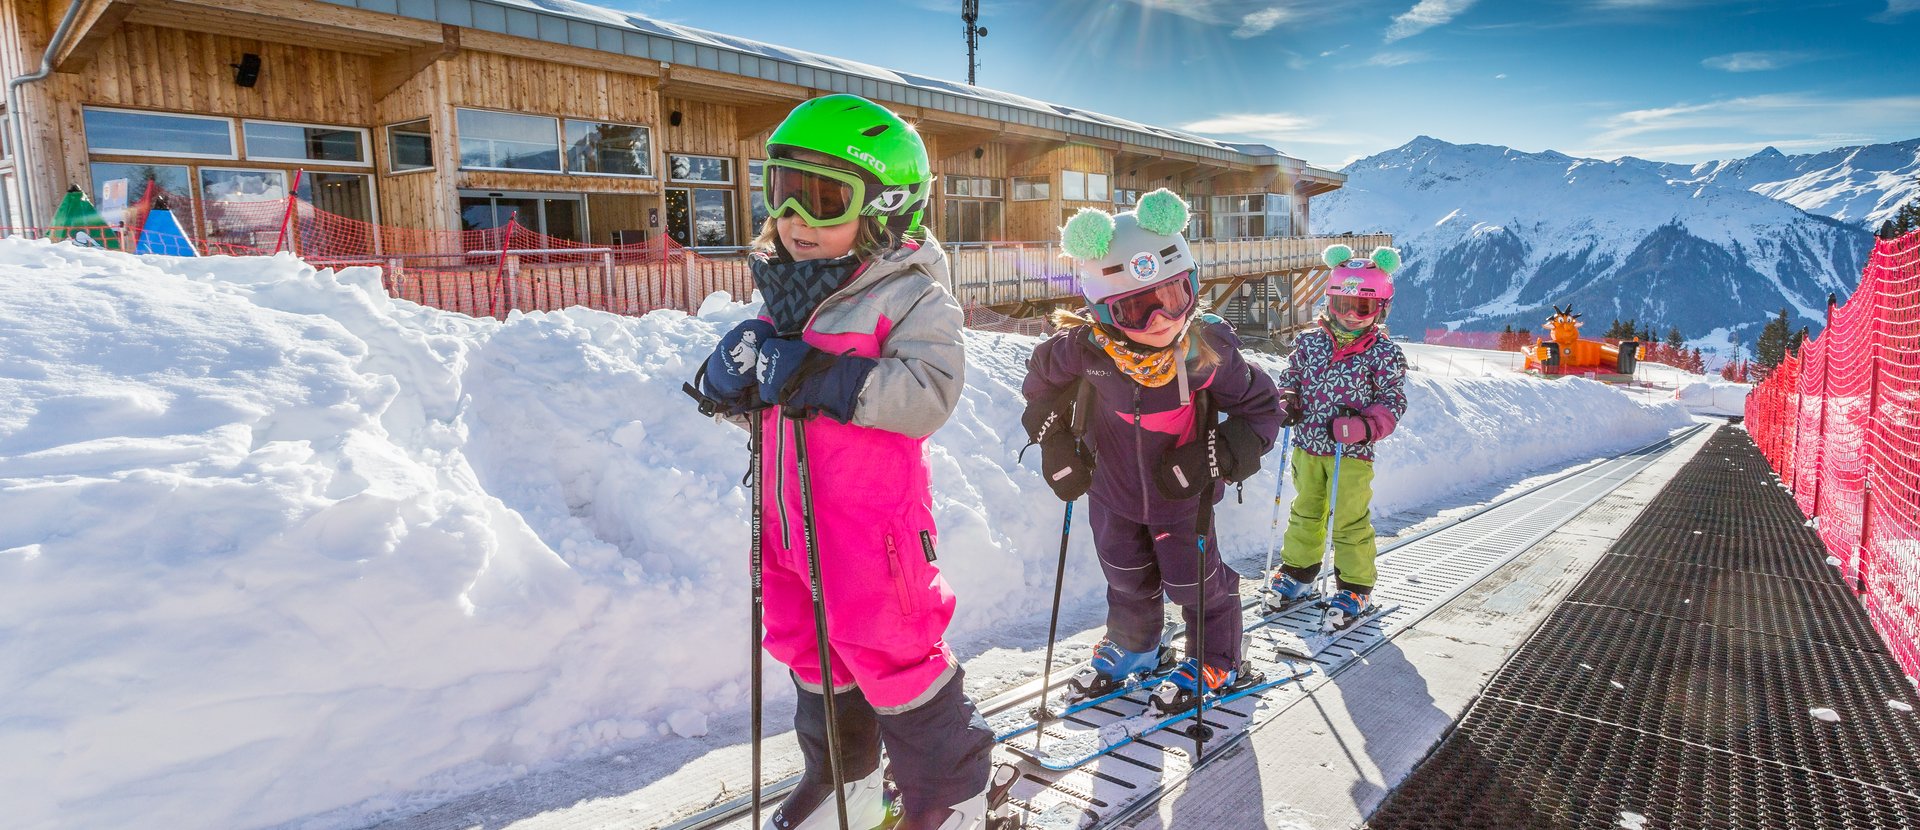 Children's ski paradise